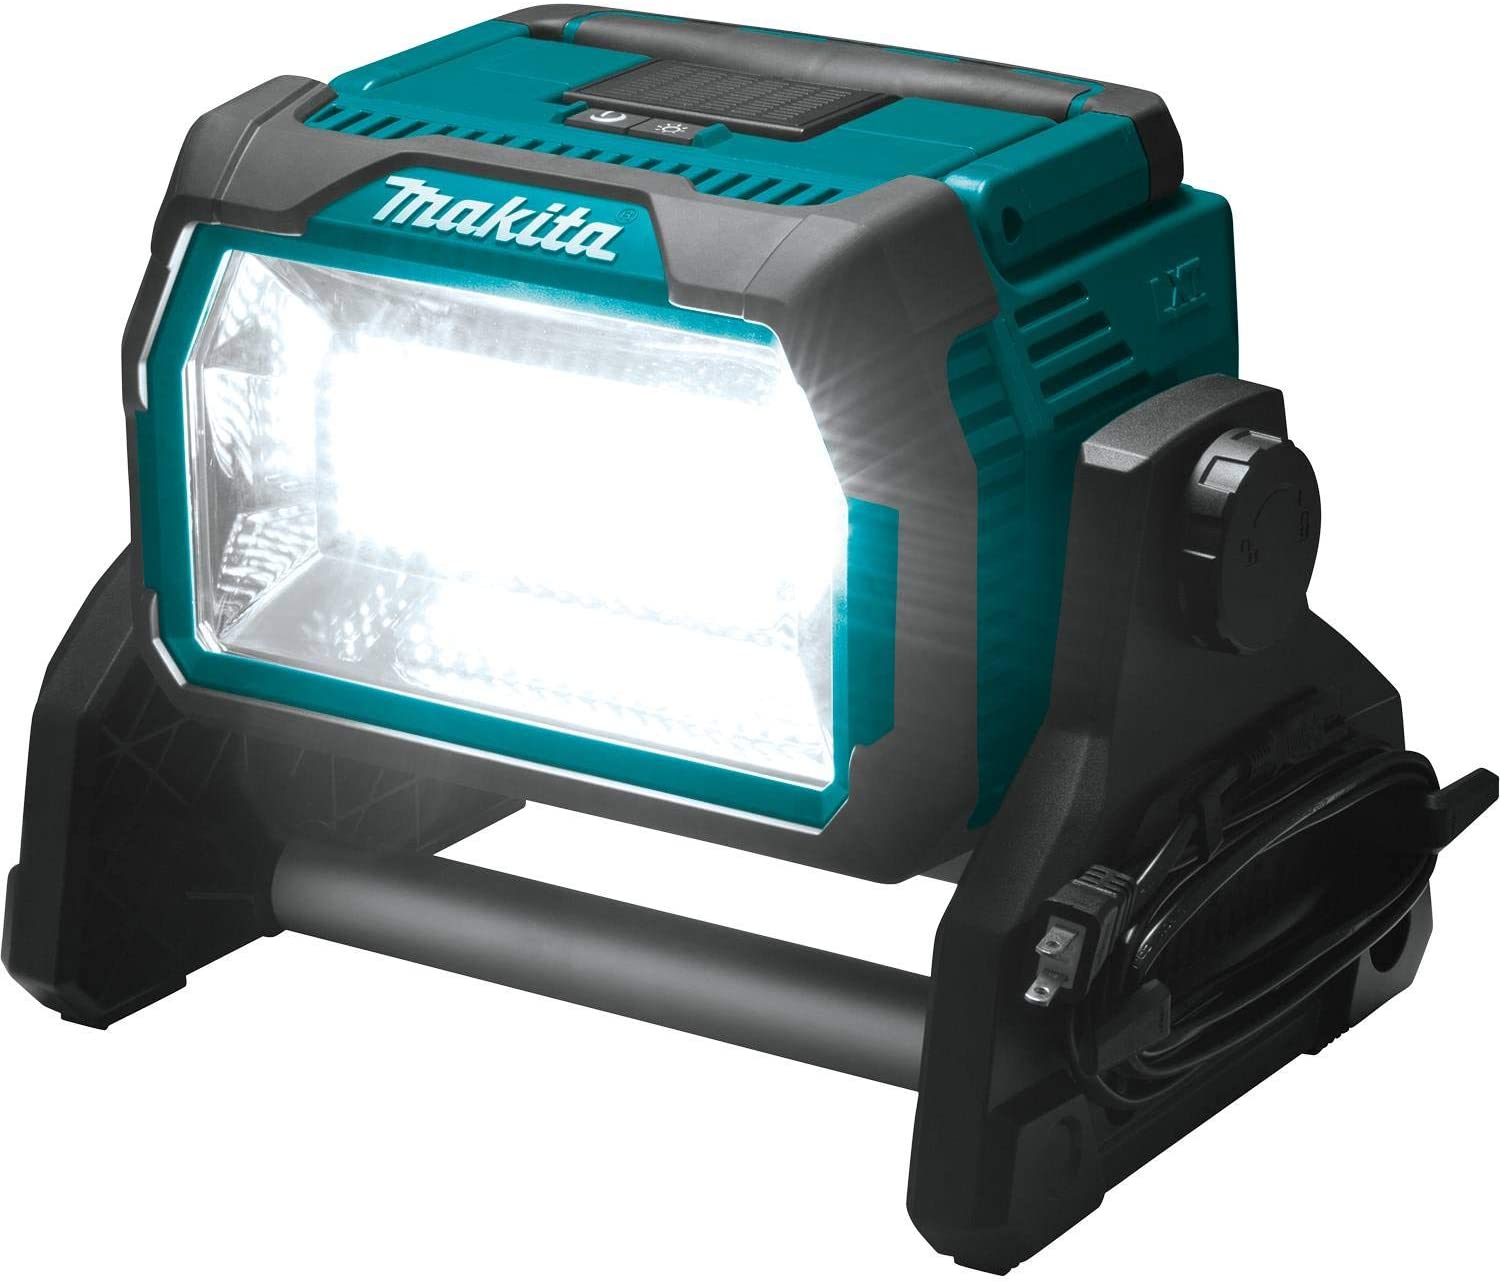 Makita LED Cordless Worklight 10000 Lumens - Corded & Cordless - DML809 - 110V